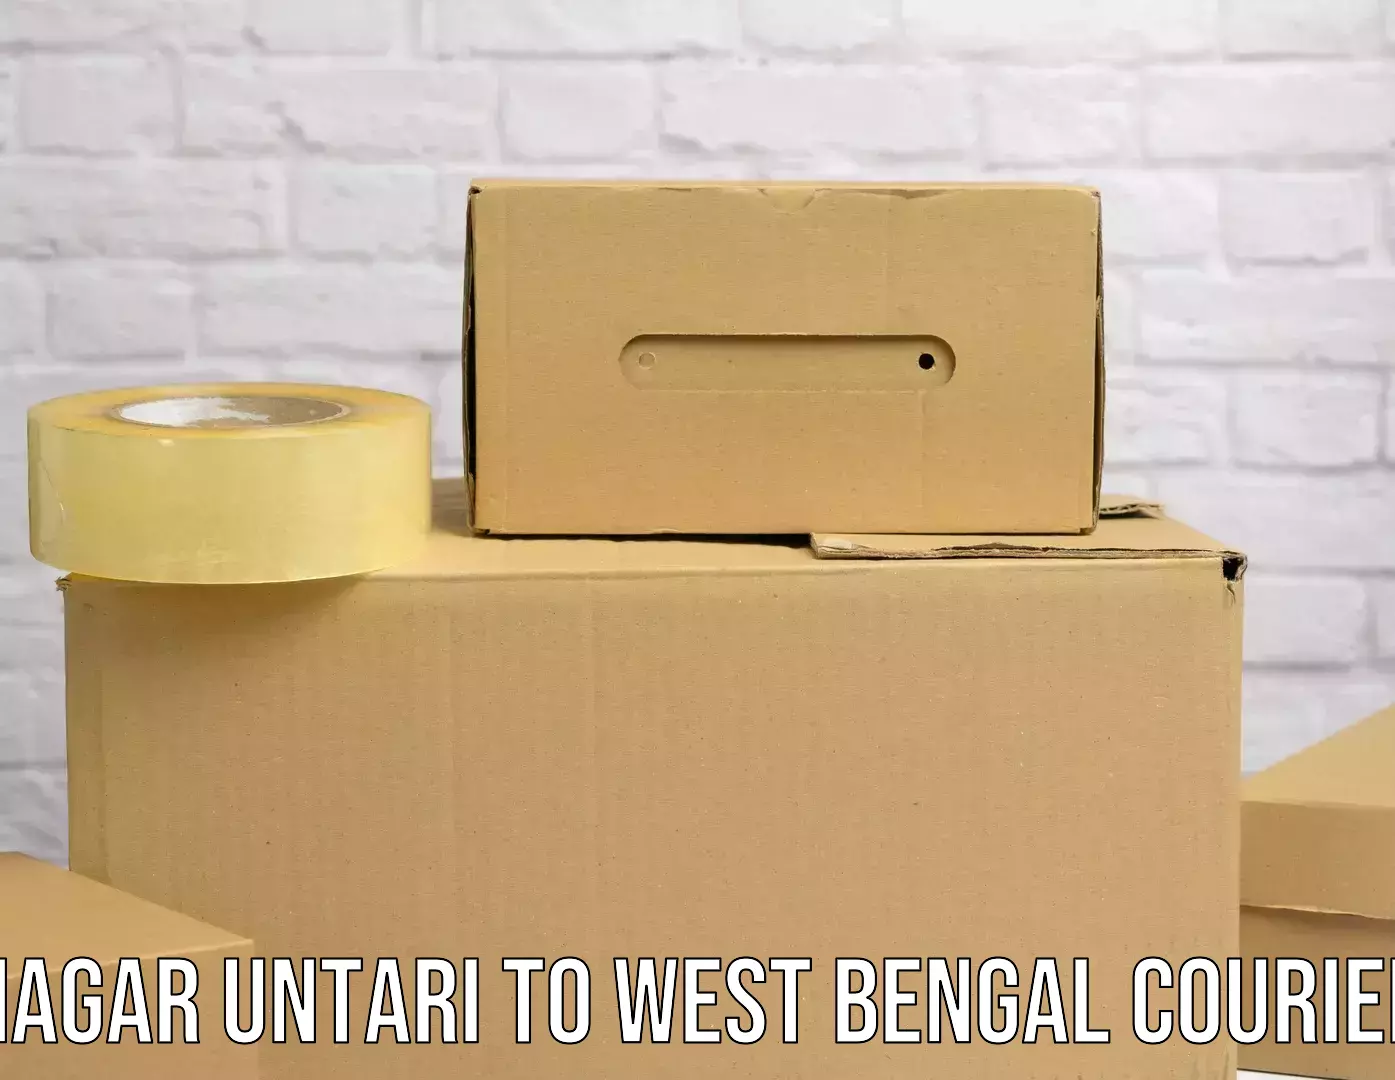 Express courier facilities Nagar Untari to West Bengal